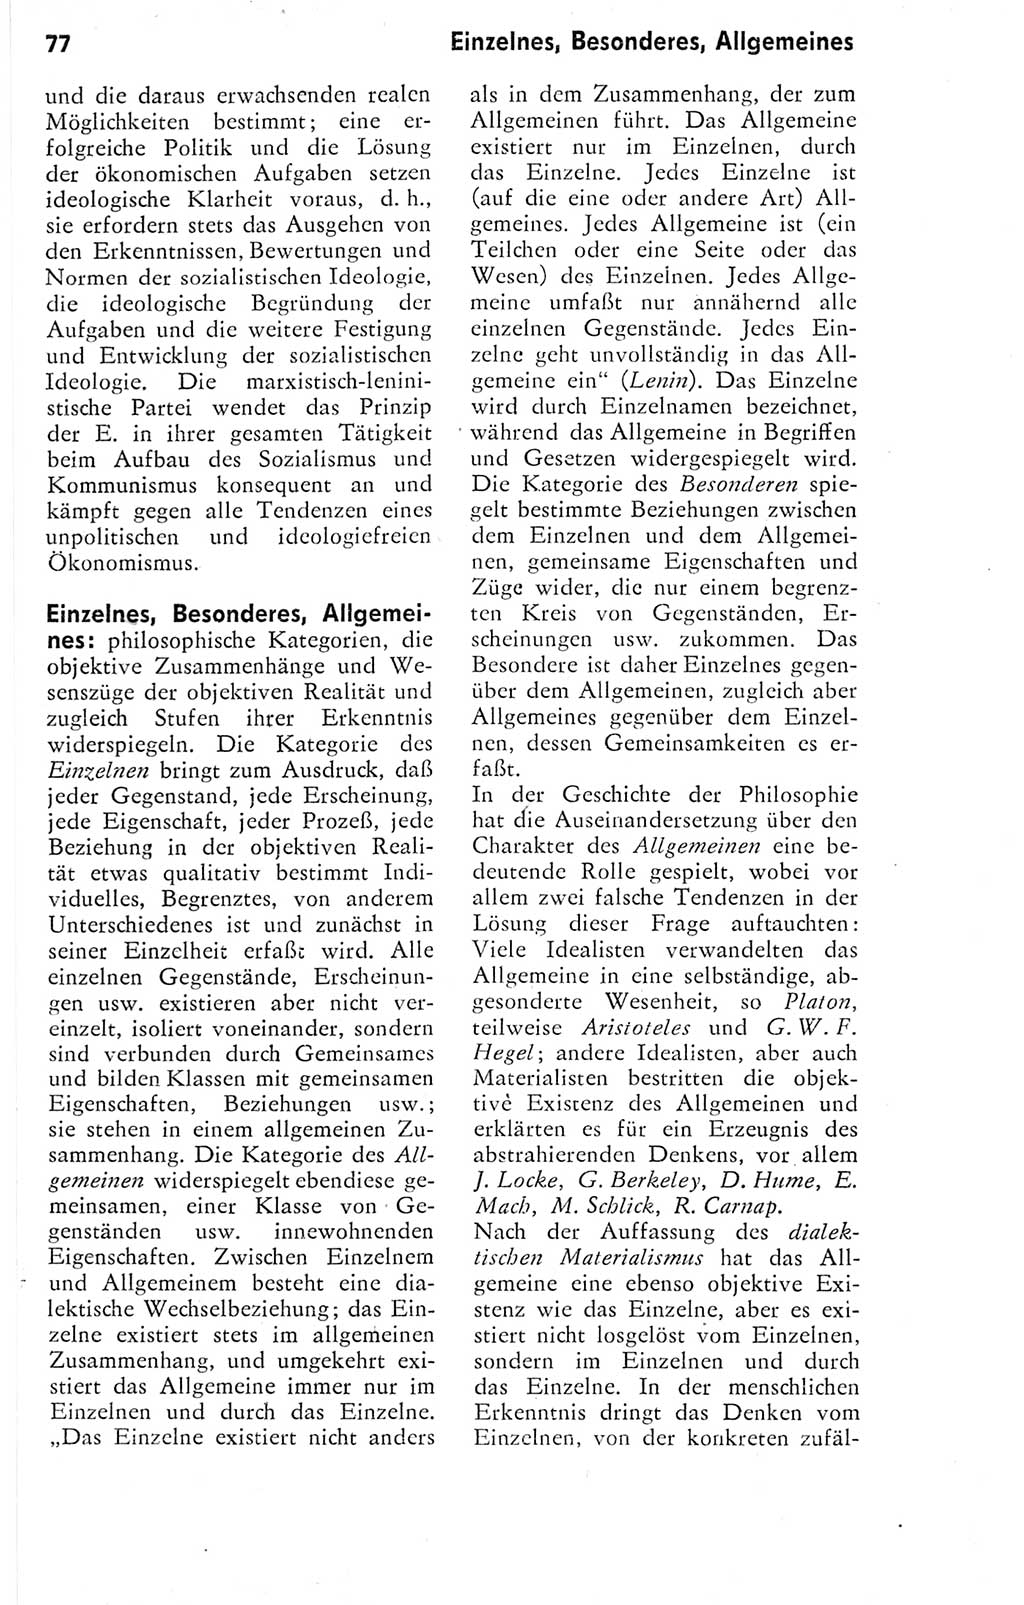 Kleines Wörterbuch der marxistisch-leninistischen Philosophie [Deutsche Demokratische Republik (DDR)] 1974, Seite 77 (Kl. Wb. ML Phil. DDR 1974, S. 77)